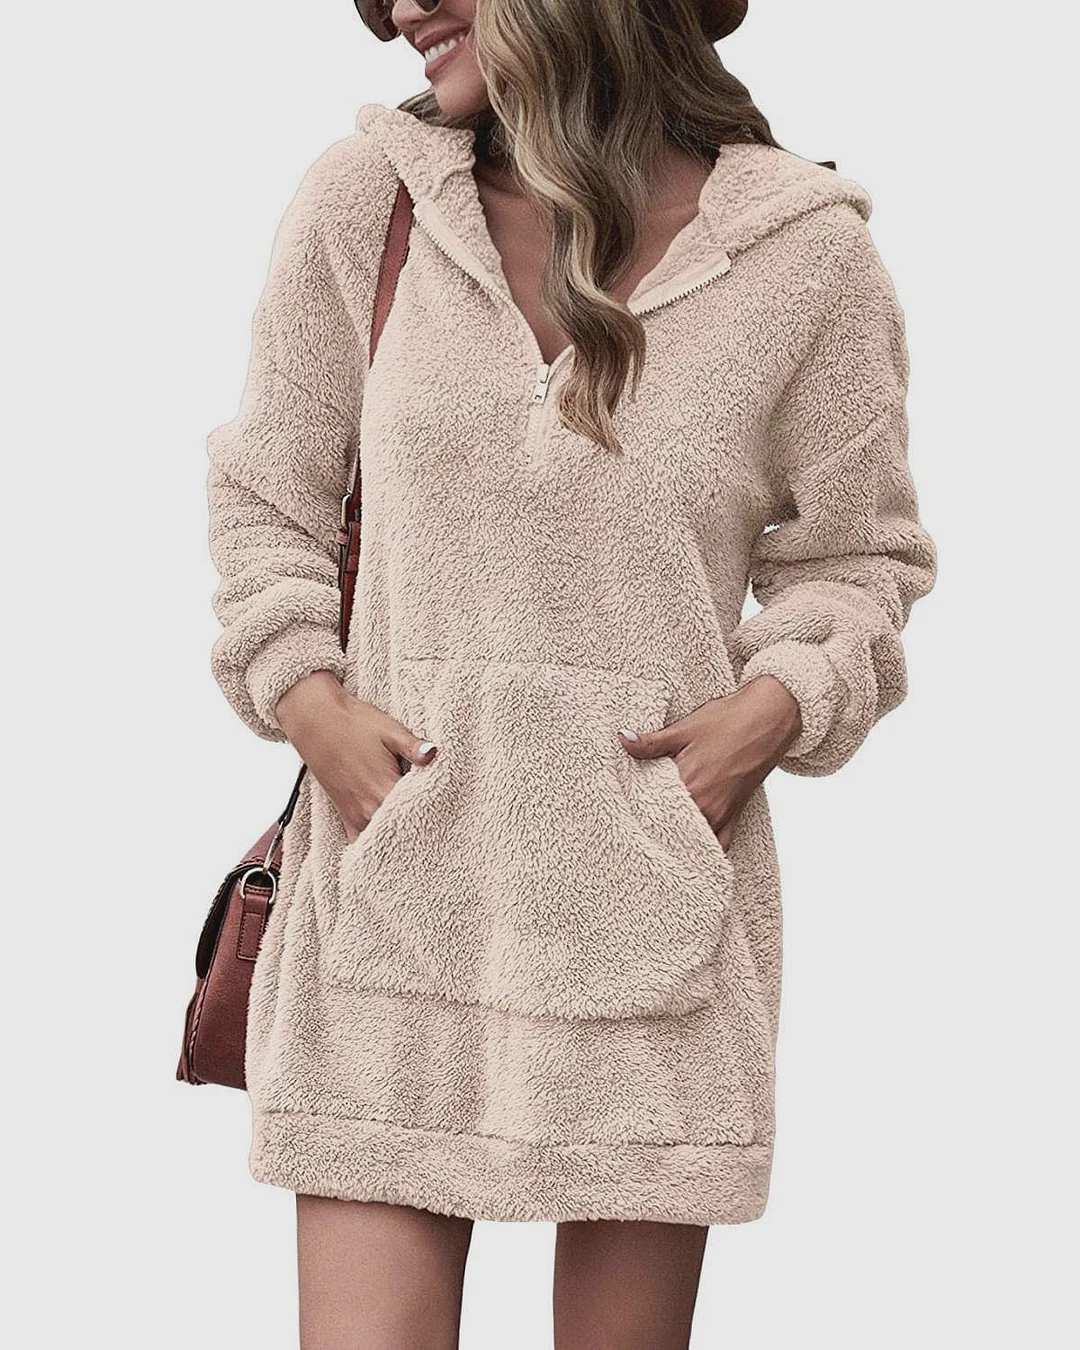 Winter Hooded Sweatshirt Women Fashion Streetwear Pocket Zipper Fleece Warm Pullovers Tops Female Oversized Long Hoodies Dress